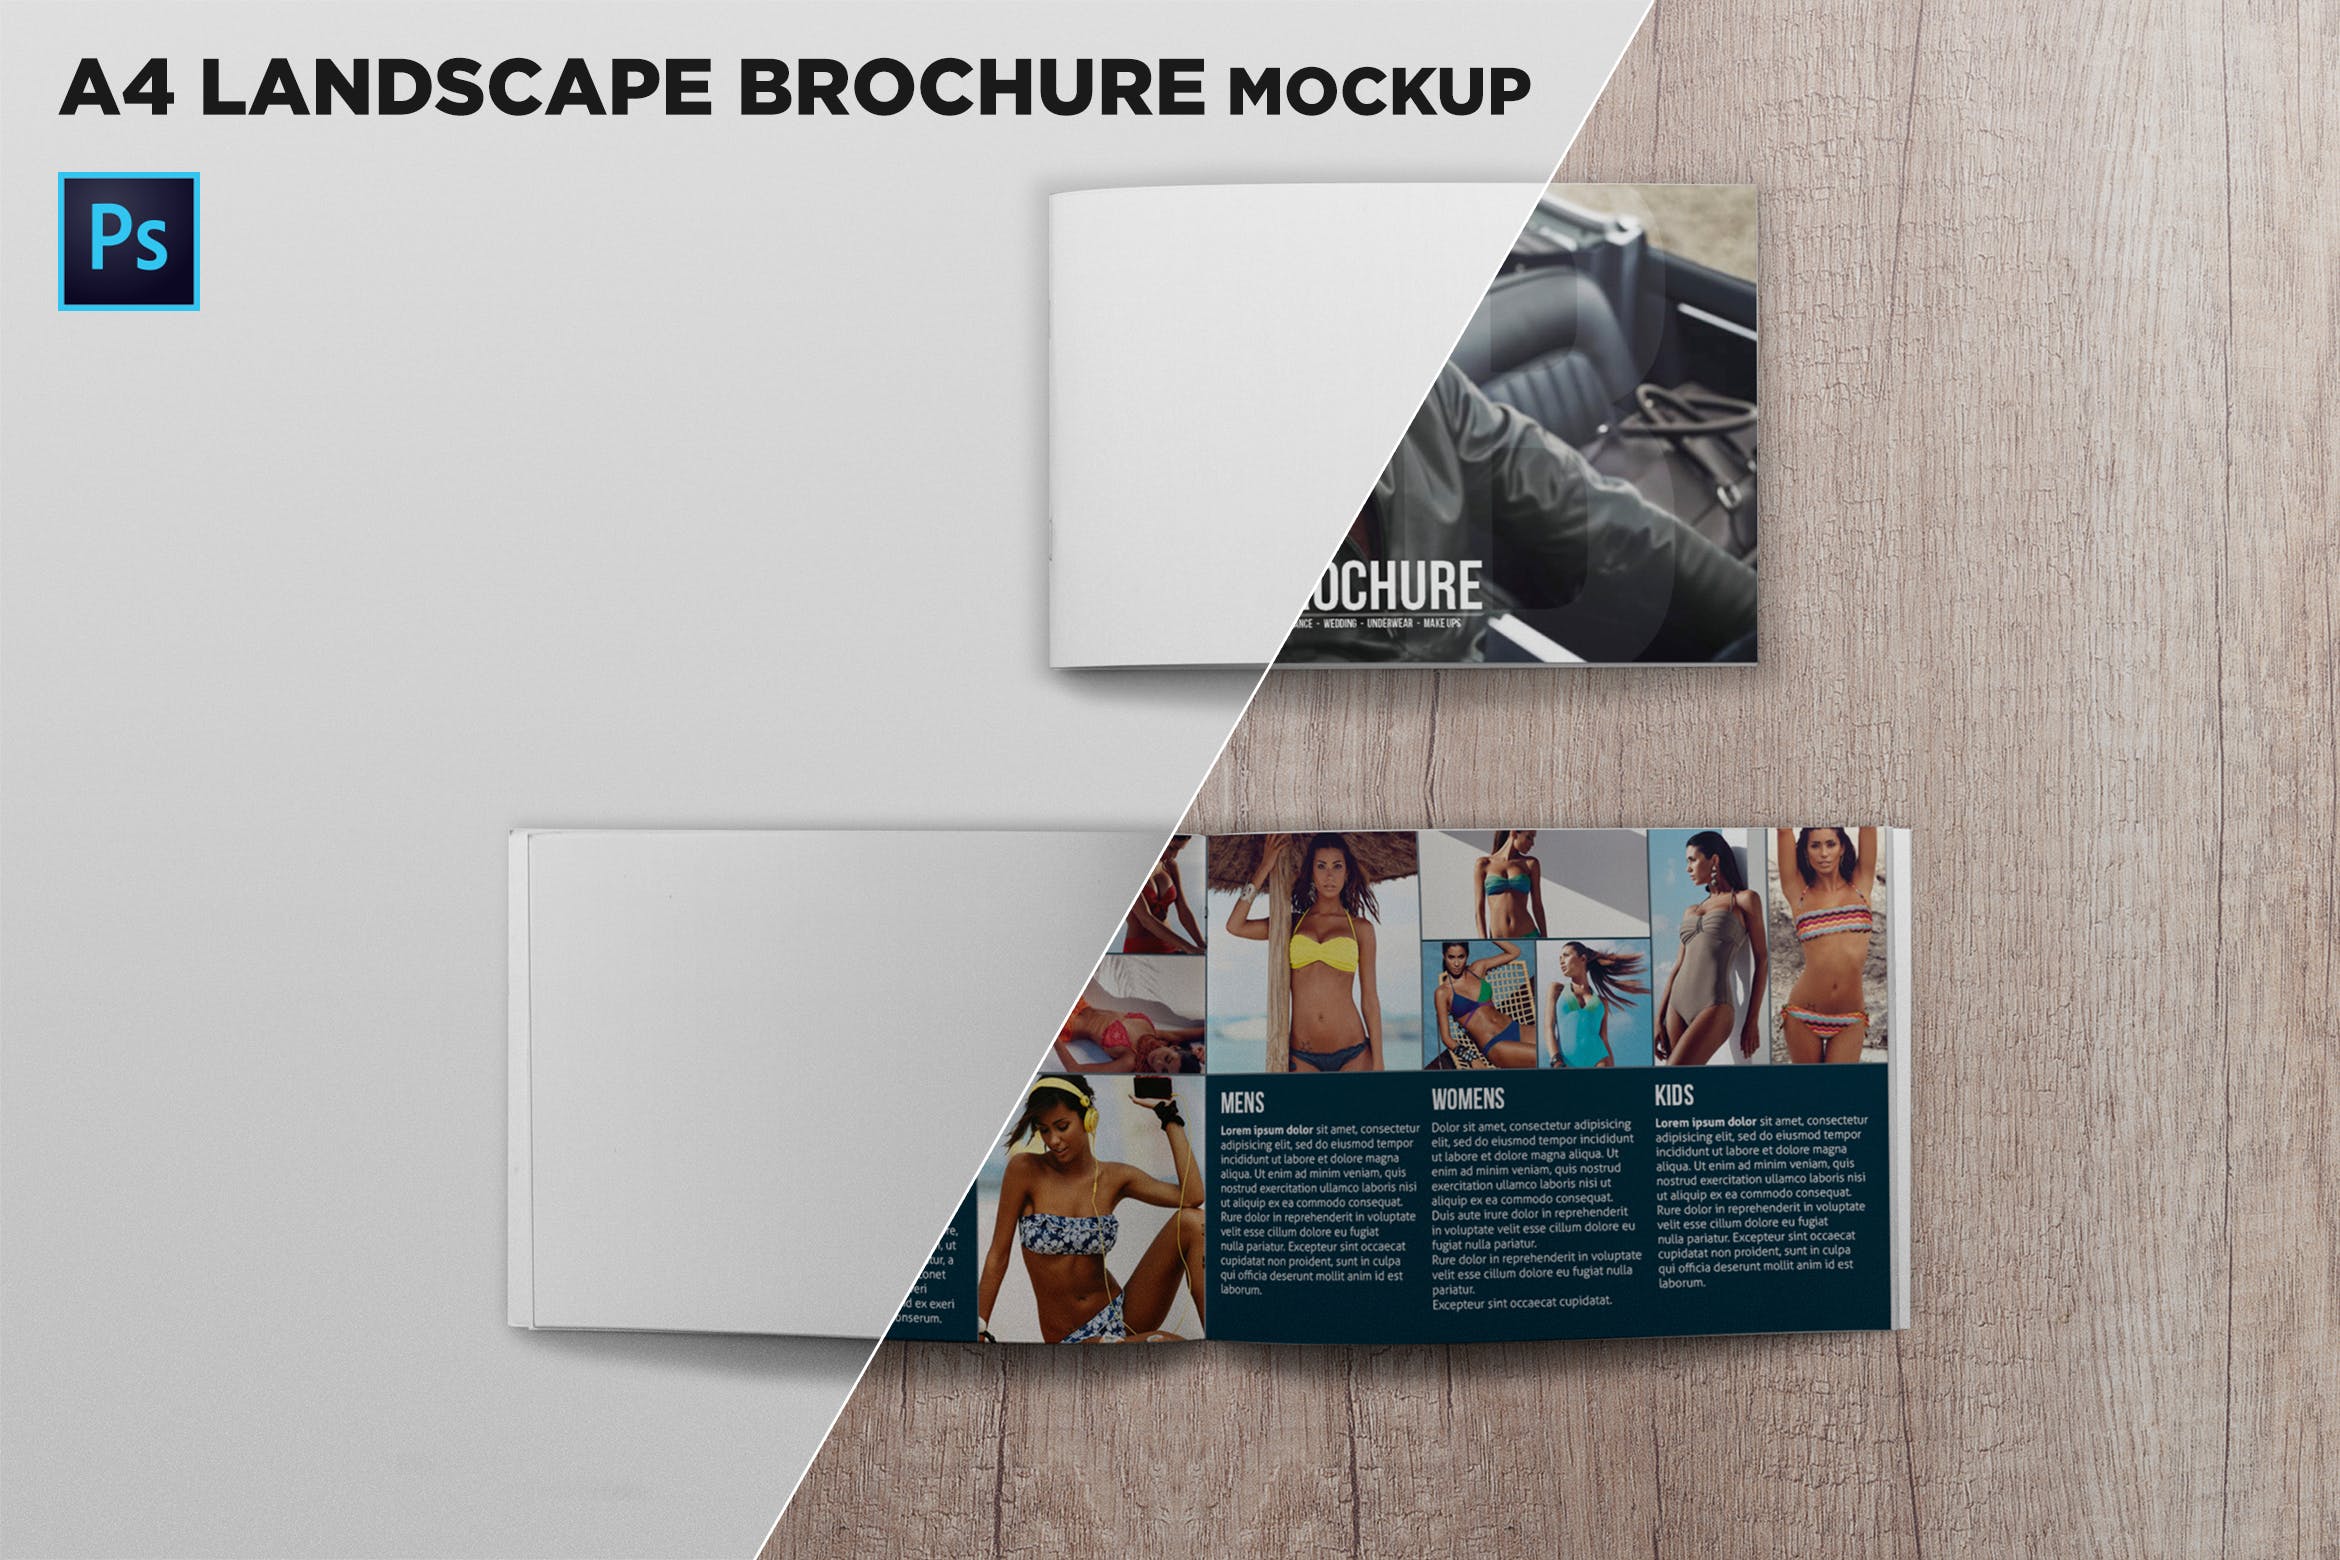 宣传画册/企业画册封面&内页版式设计效果图样机大洋岛精选 Cover & Open Landscape Brochure Mockup Top View插图